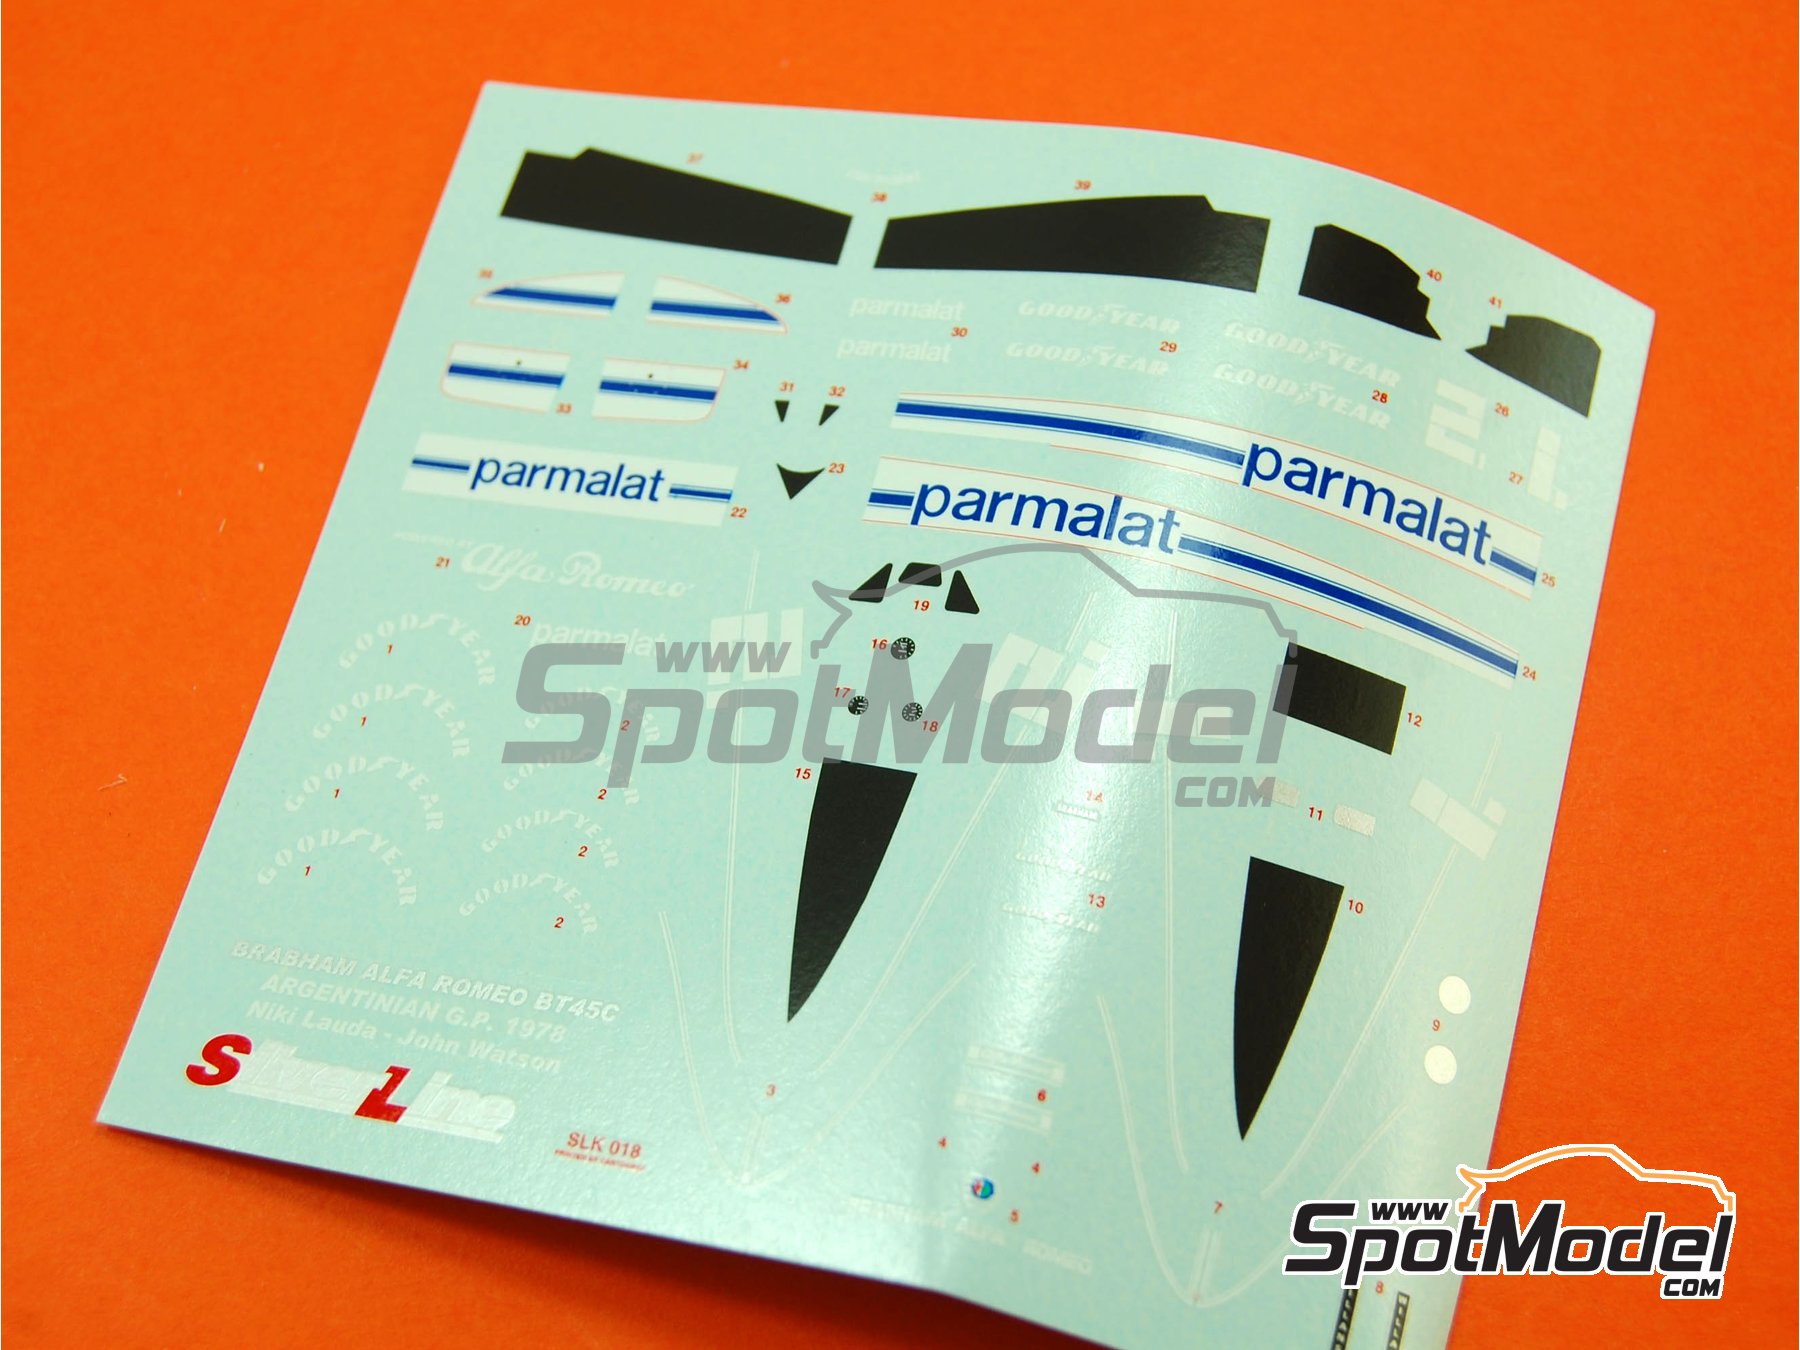 Tameo Kits SLK018: Car scale model kit 1/43 scale - Brabham Alfa